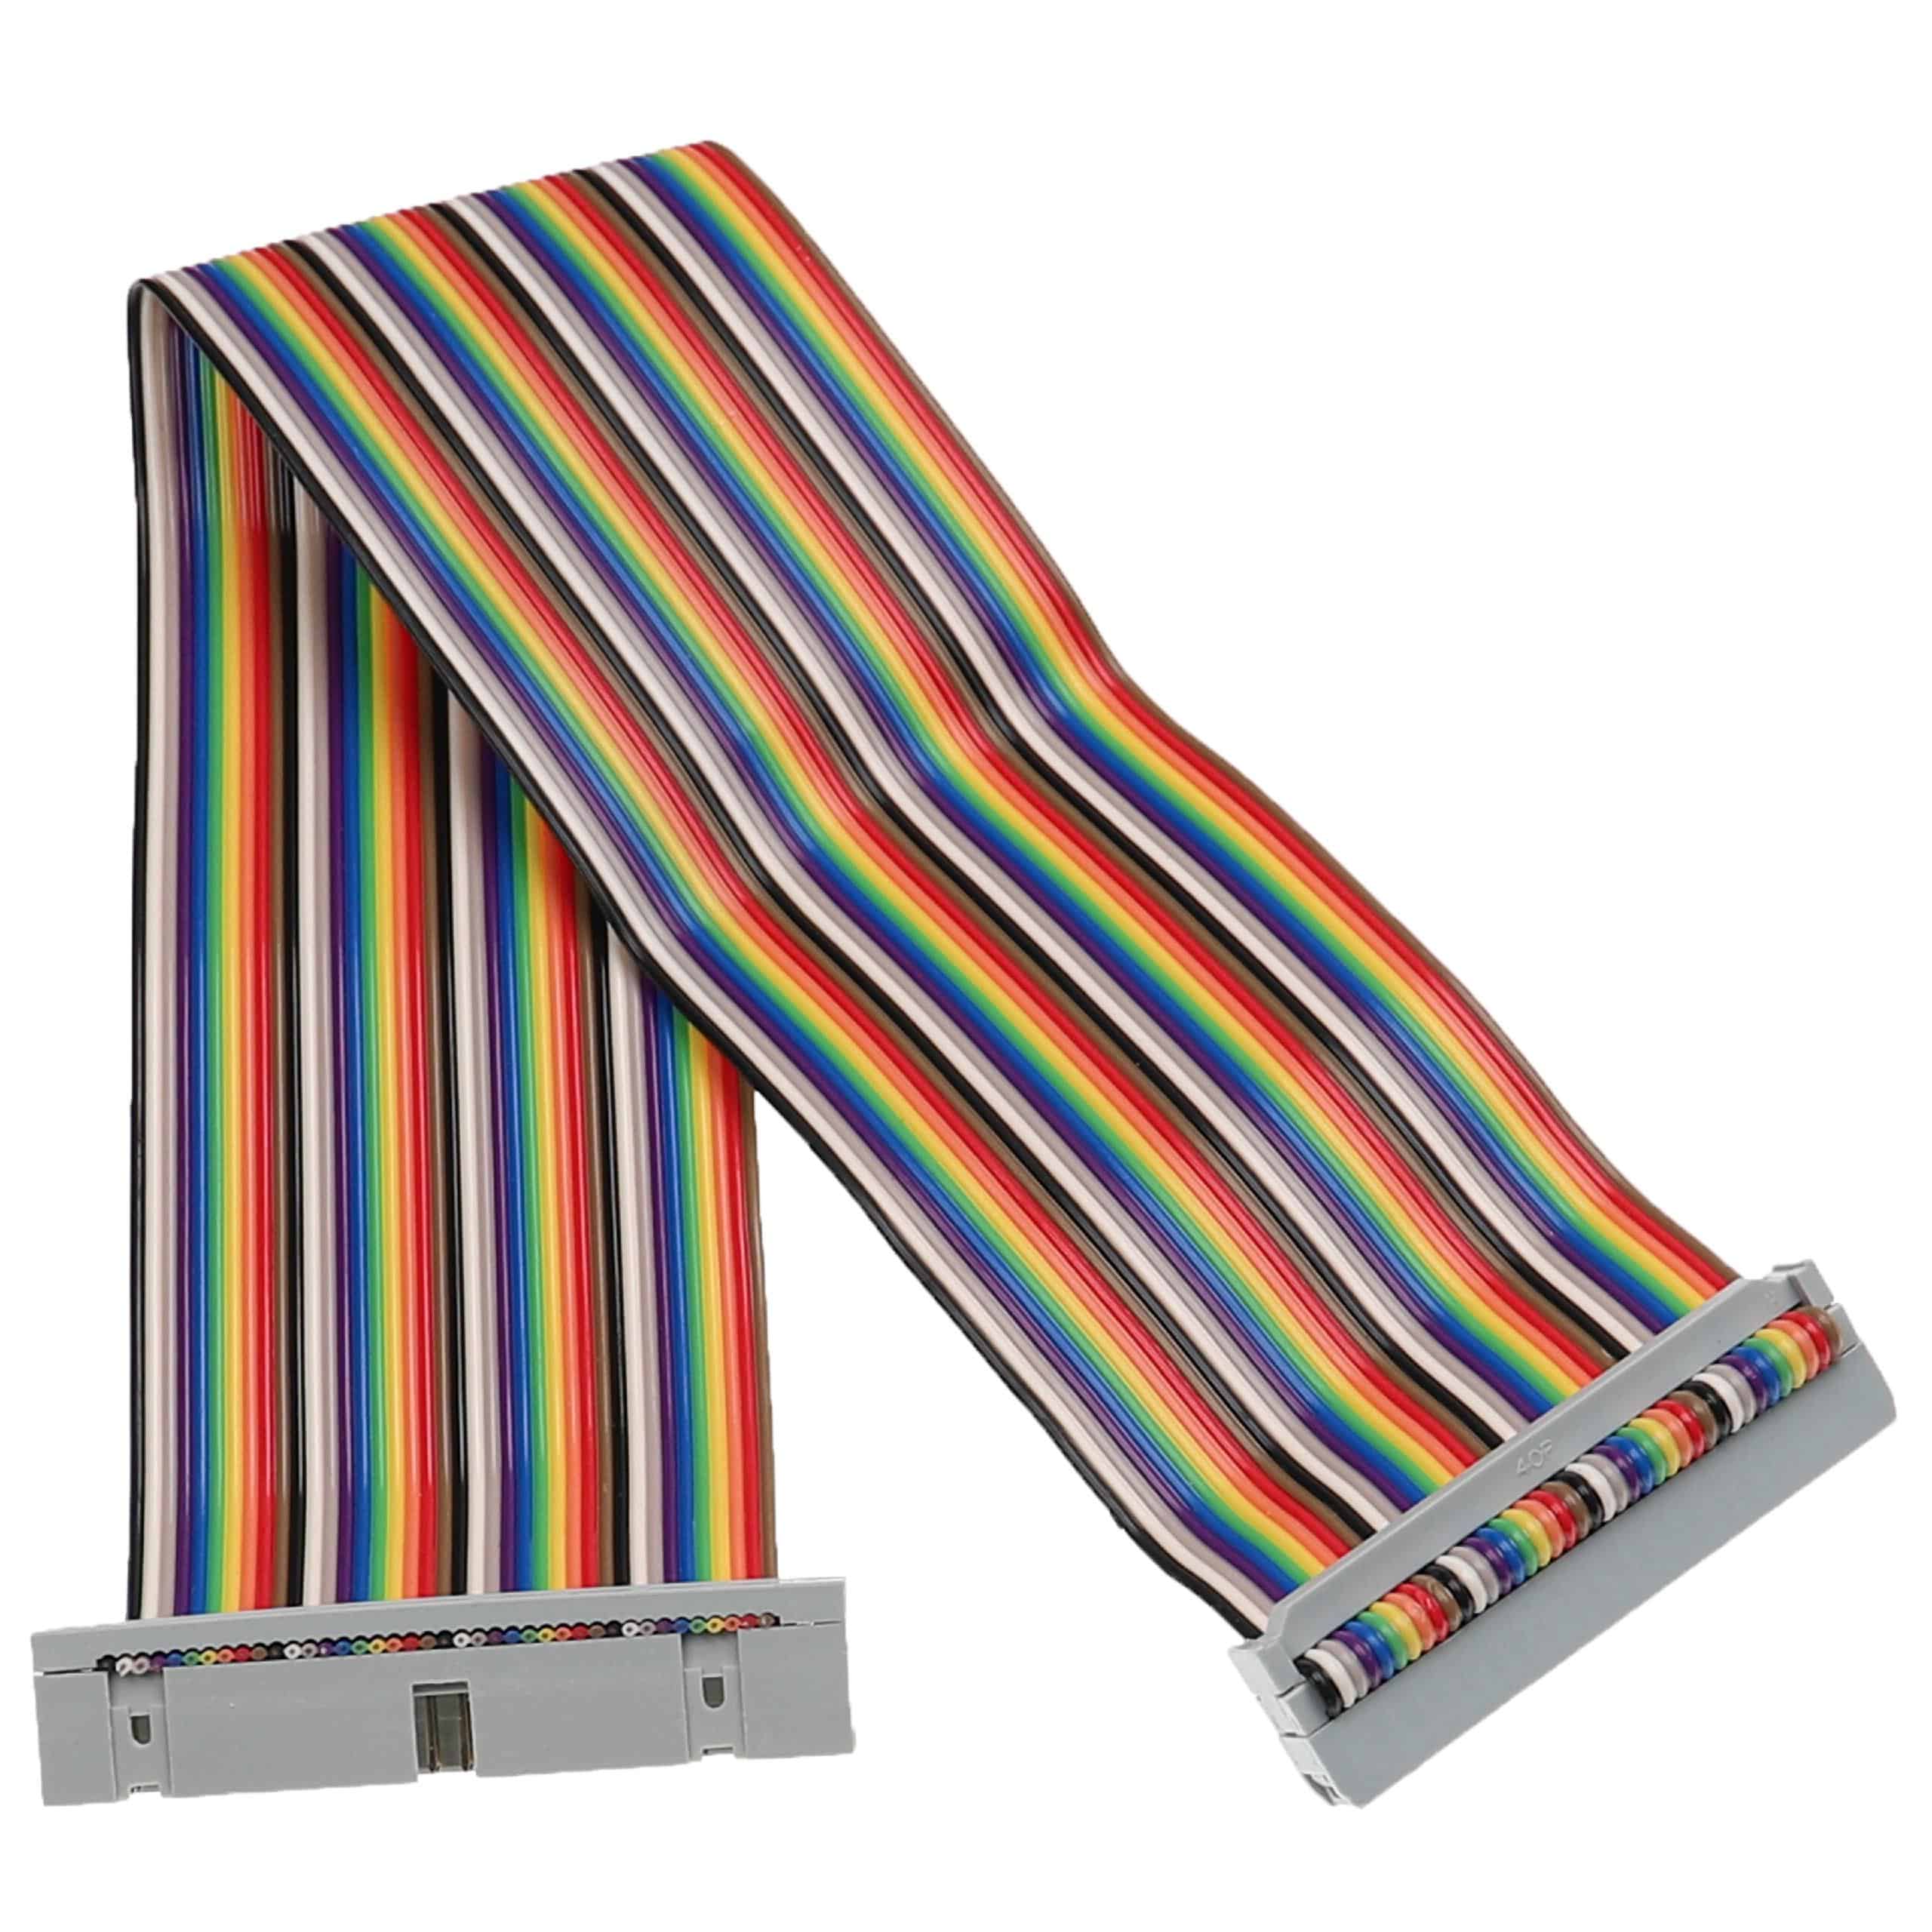 GPIO Kabel 40 Pin passend für Raspberry Pi - GPIO Verlängerung Mehrfarbig, 30 cm